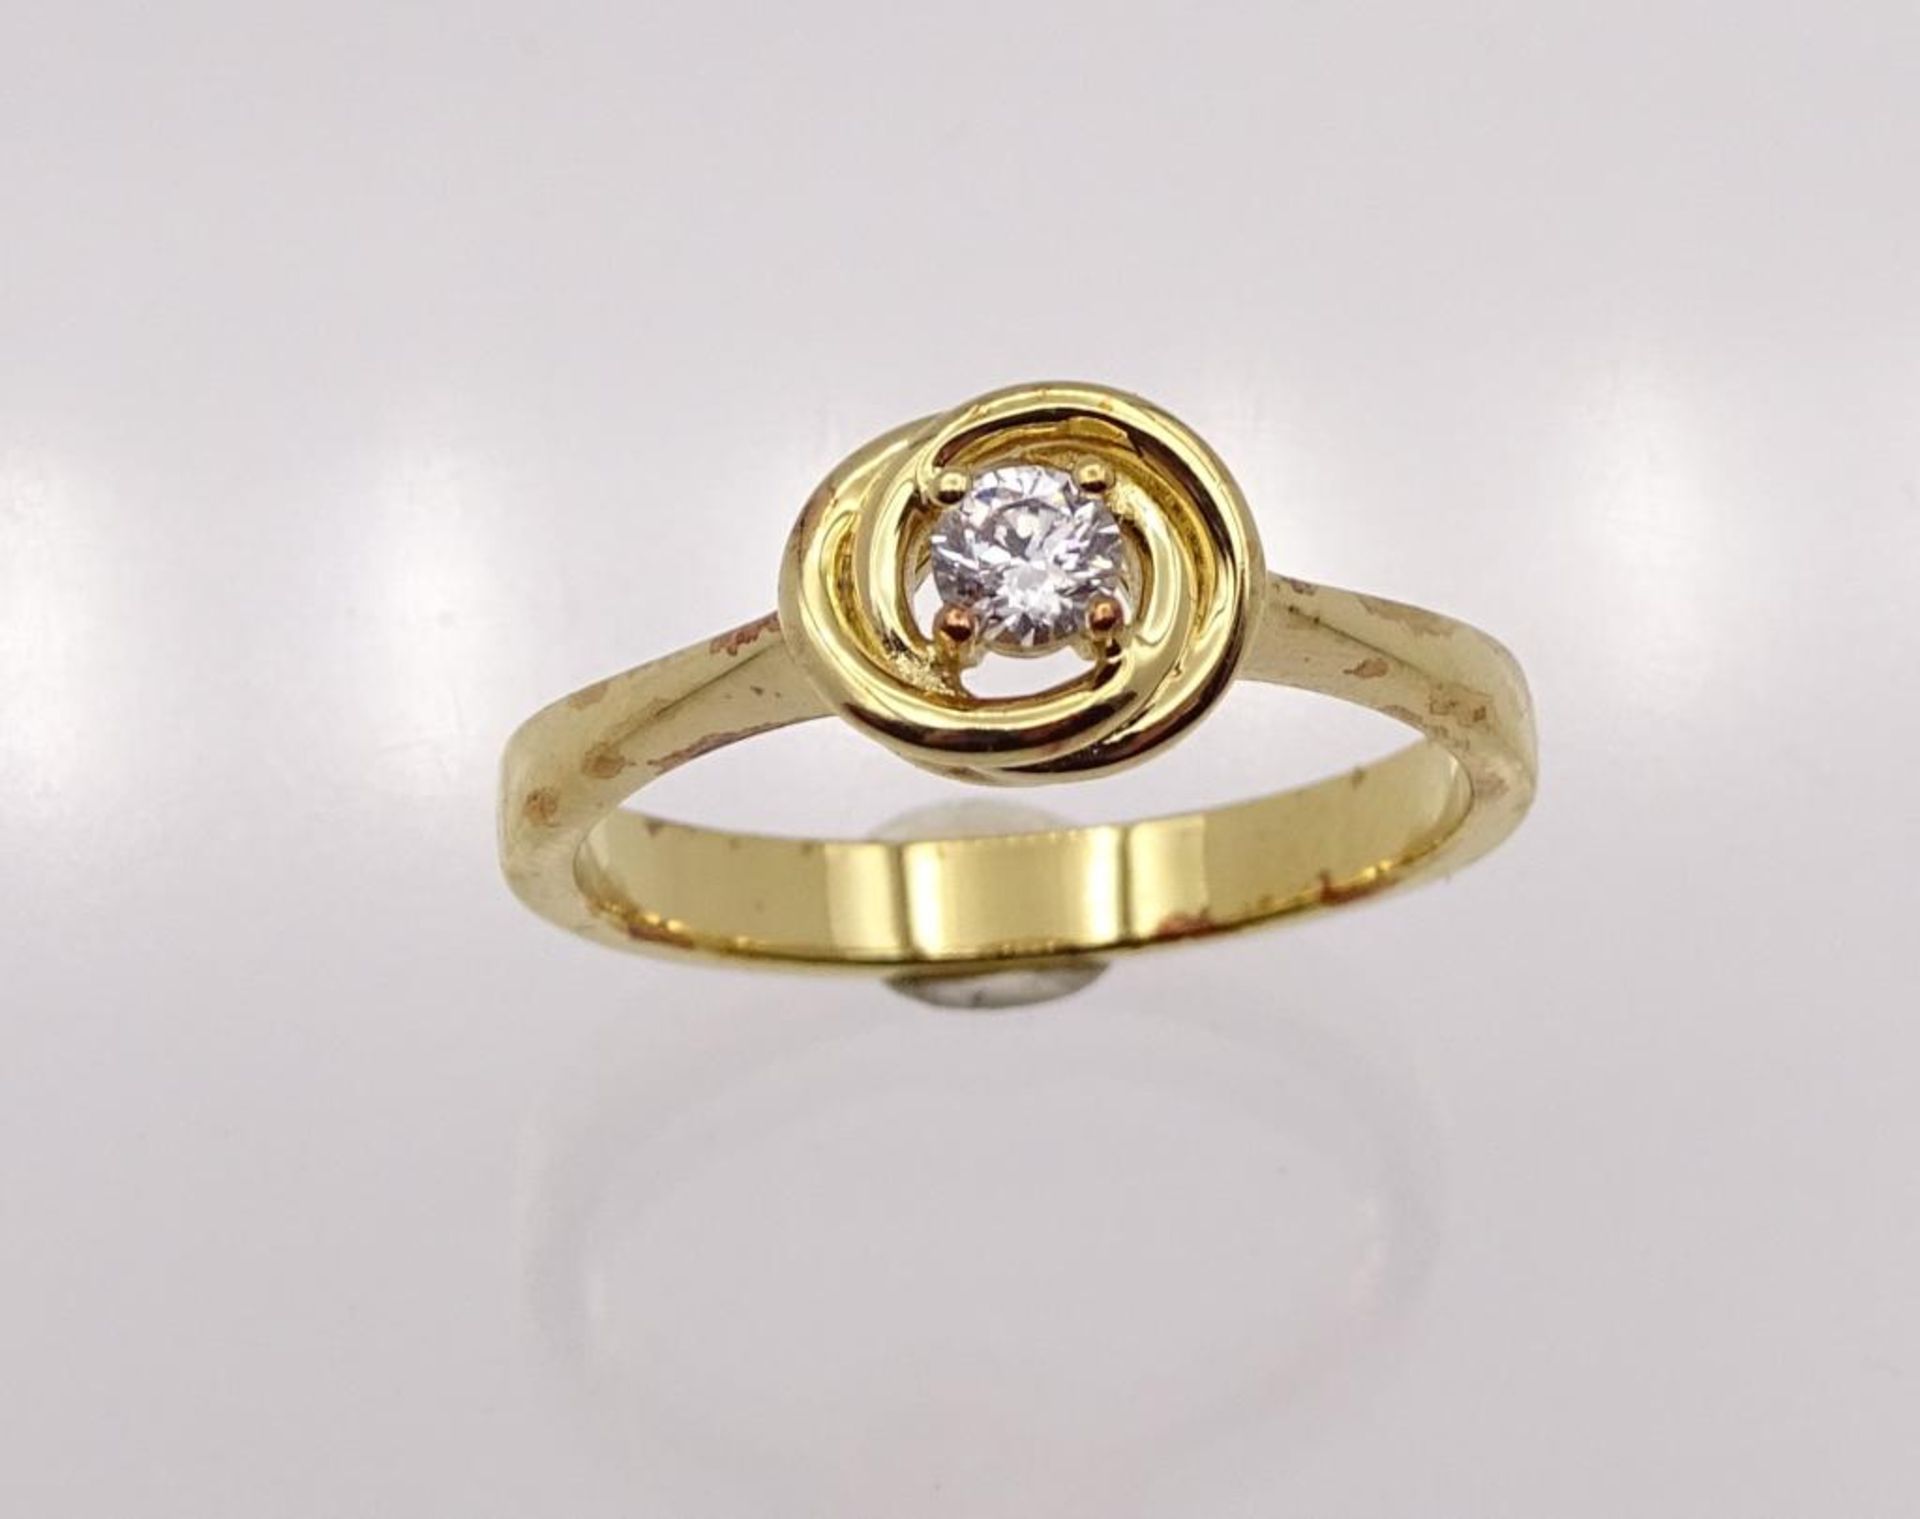 Edelstein-Ring Silber 925 vergoldet, mit einem rund fac. Weißen Edelstein 3,7 mm, RG 59, 3,6 - Image 3 of 3